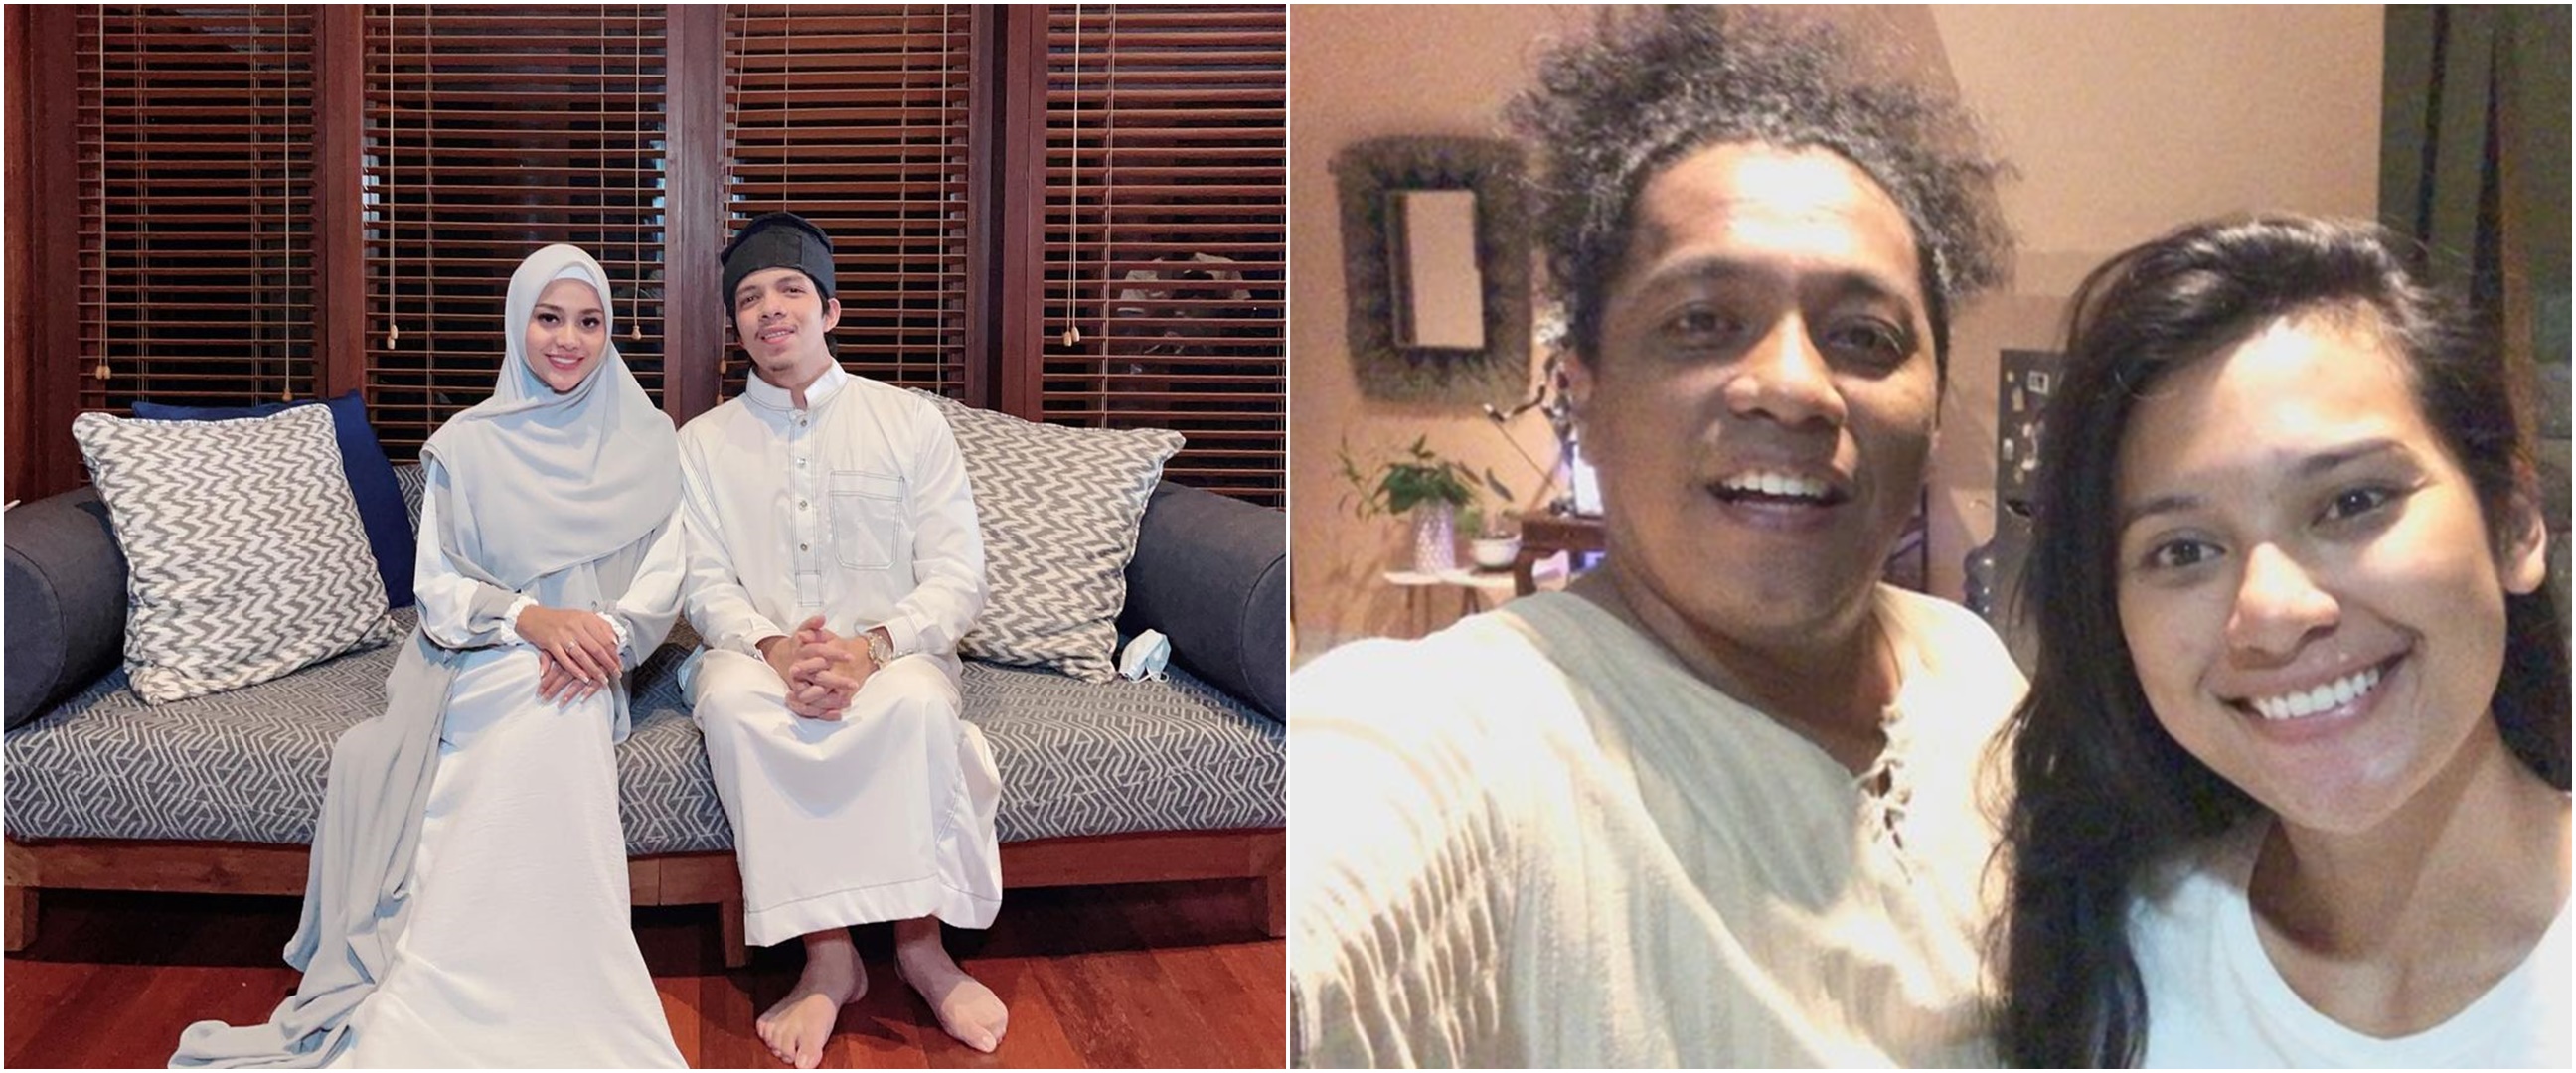 Momen 8 seleb jalani puasa Ramadan 2021 pertama sebagai suami istri